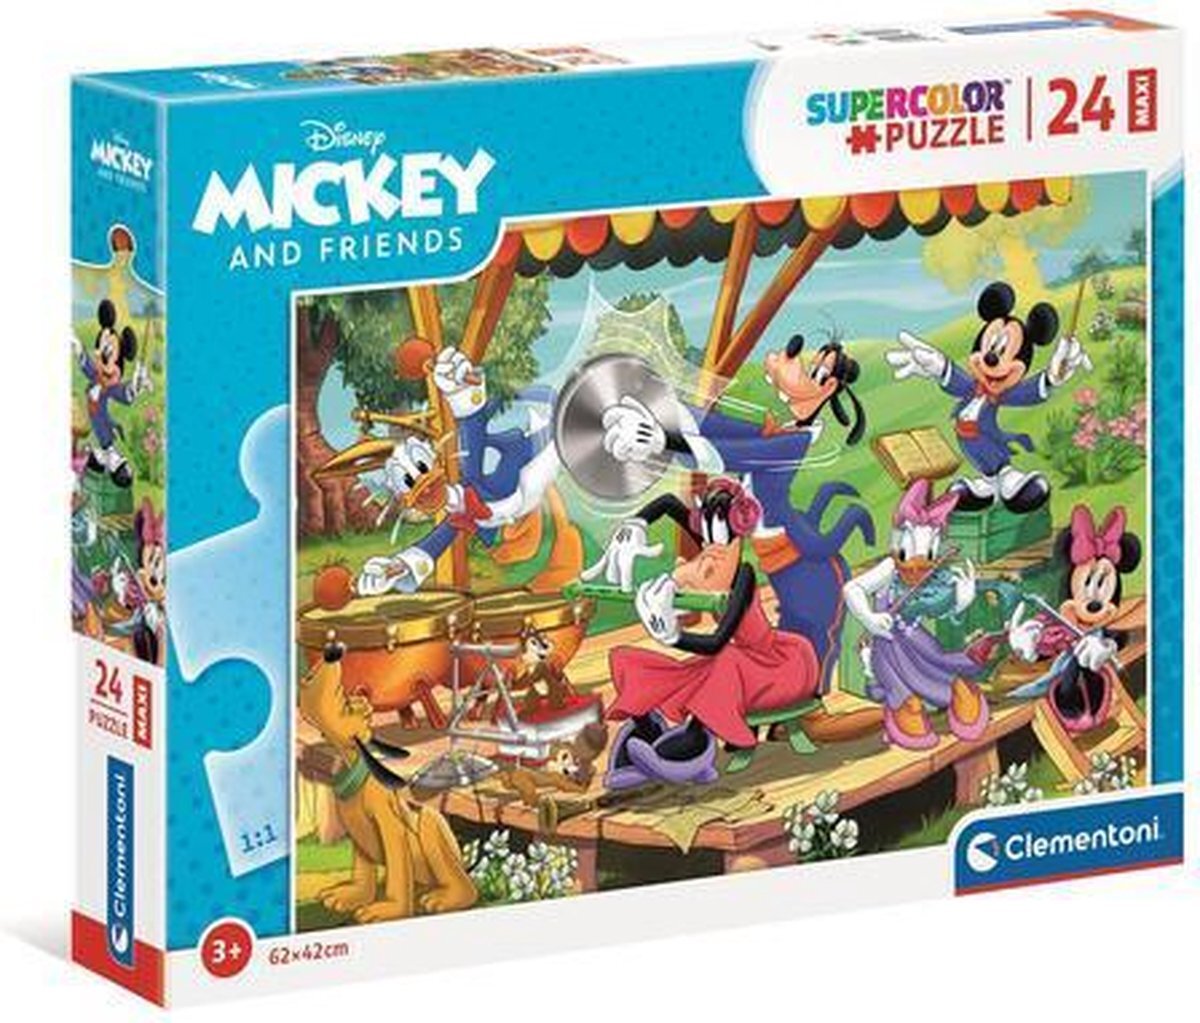 Clementoni 24218, Mickey & Friends Supercolor Maxi Puzzel voor kinderen - 24 stuks, leeftijd 3 jaar plus